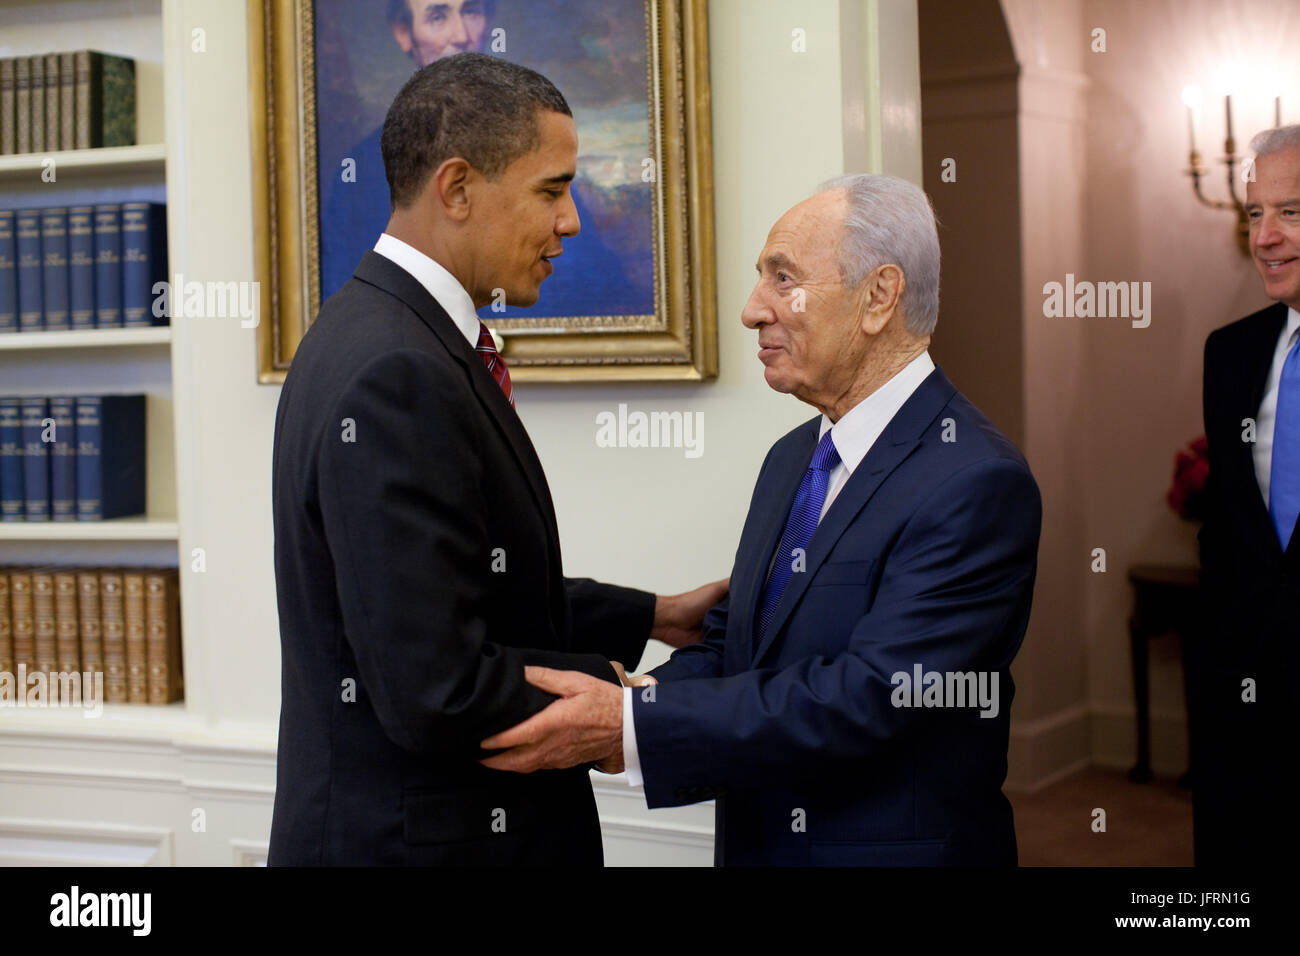 Le président Barack Obama se félicite le président israélien Shimon Peres dans le bureau ovale Le mardi, 5 mai 2009. À droite est le Vice-président Joe Biden. Photo Officiel de la Maison Blanche par Pete Souza Banque D'Images